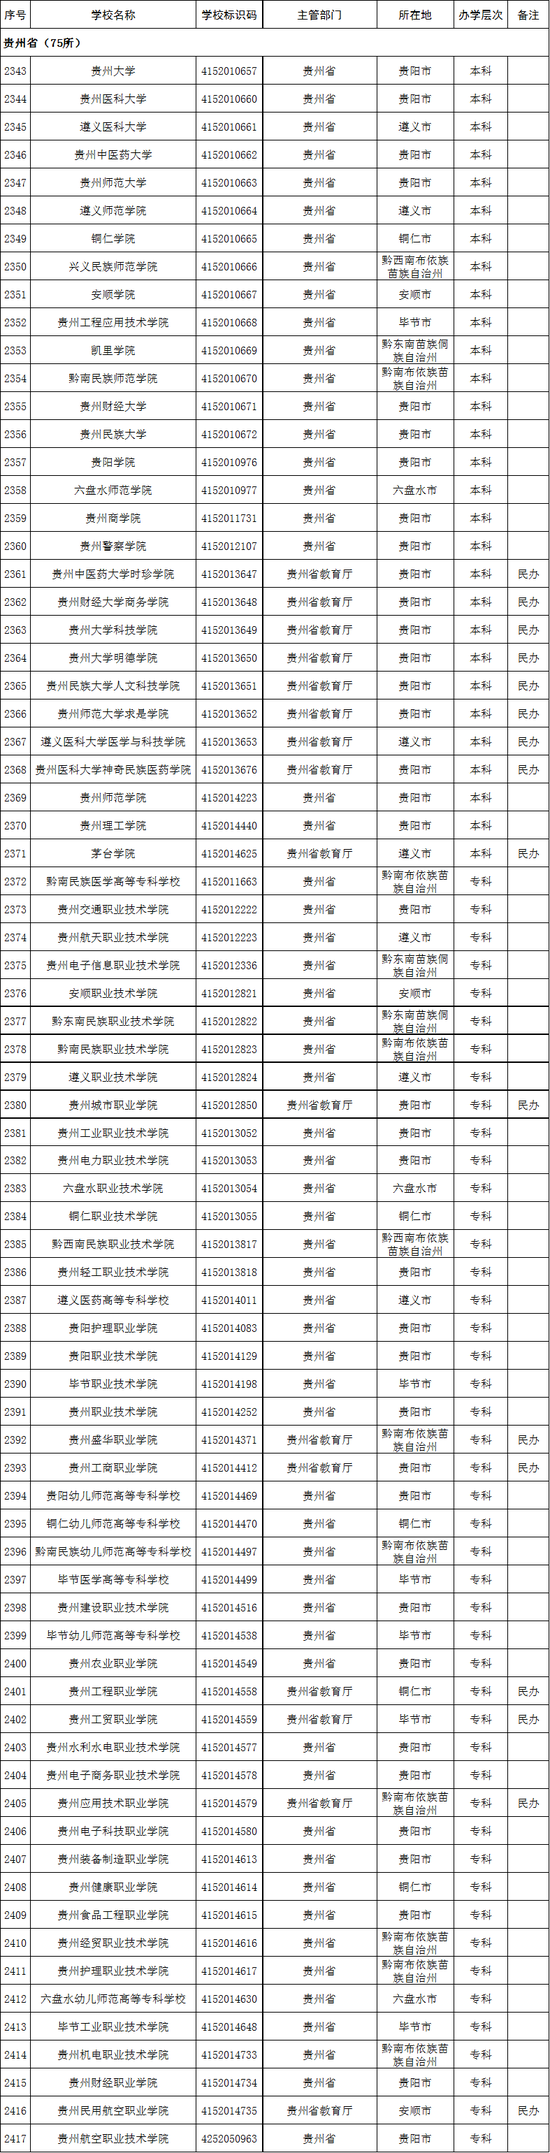 贵州省2020年高校名单(75所)